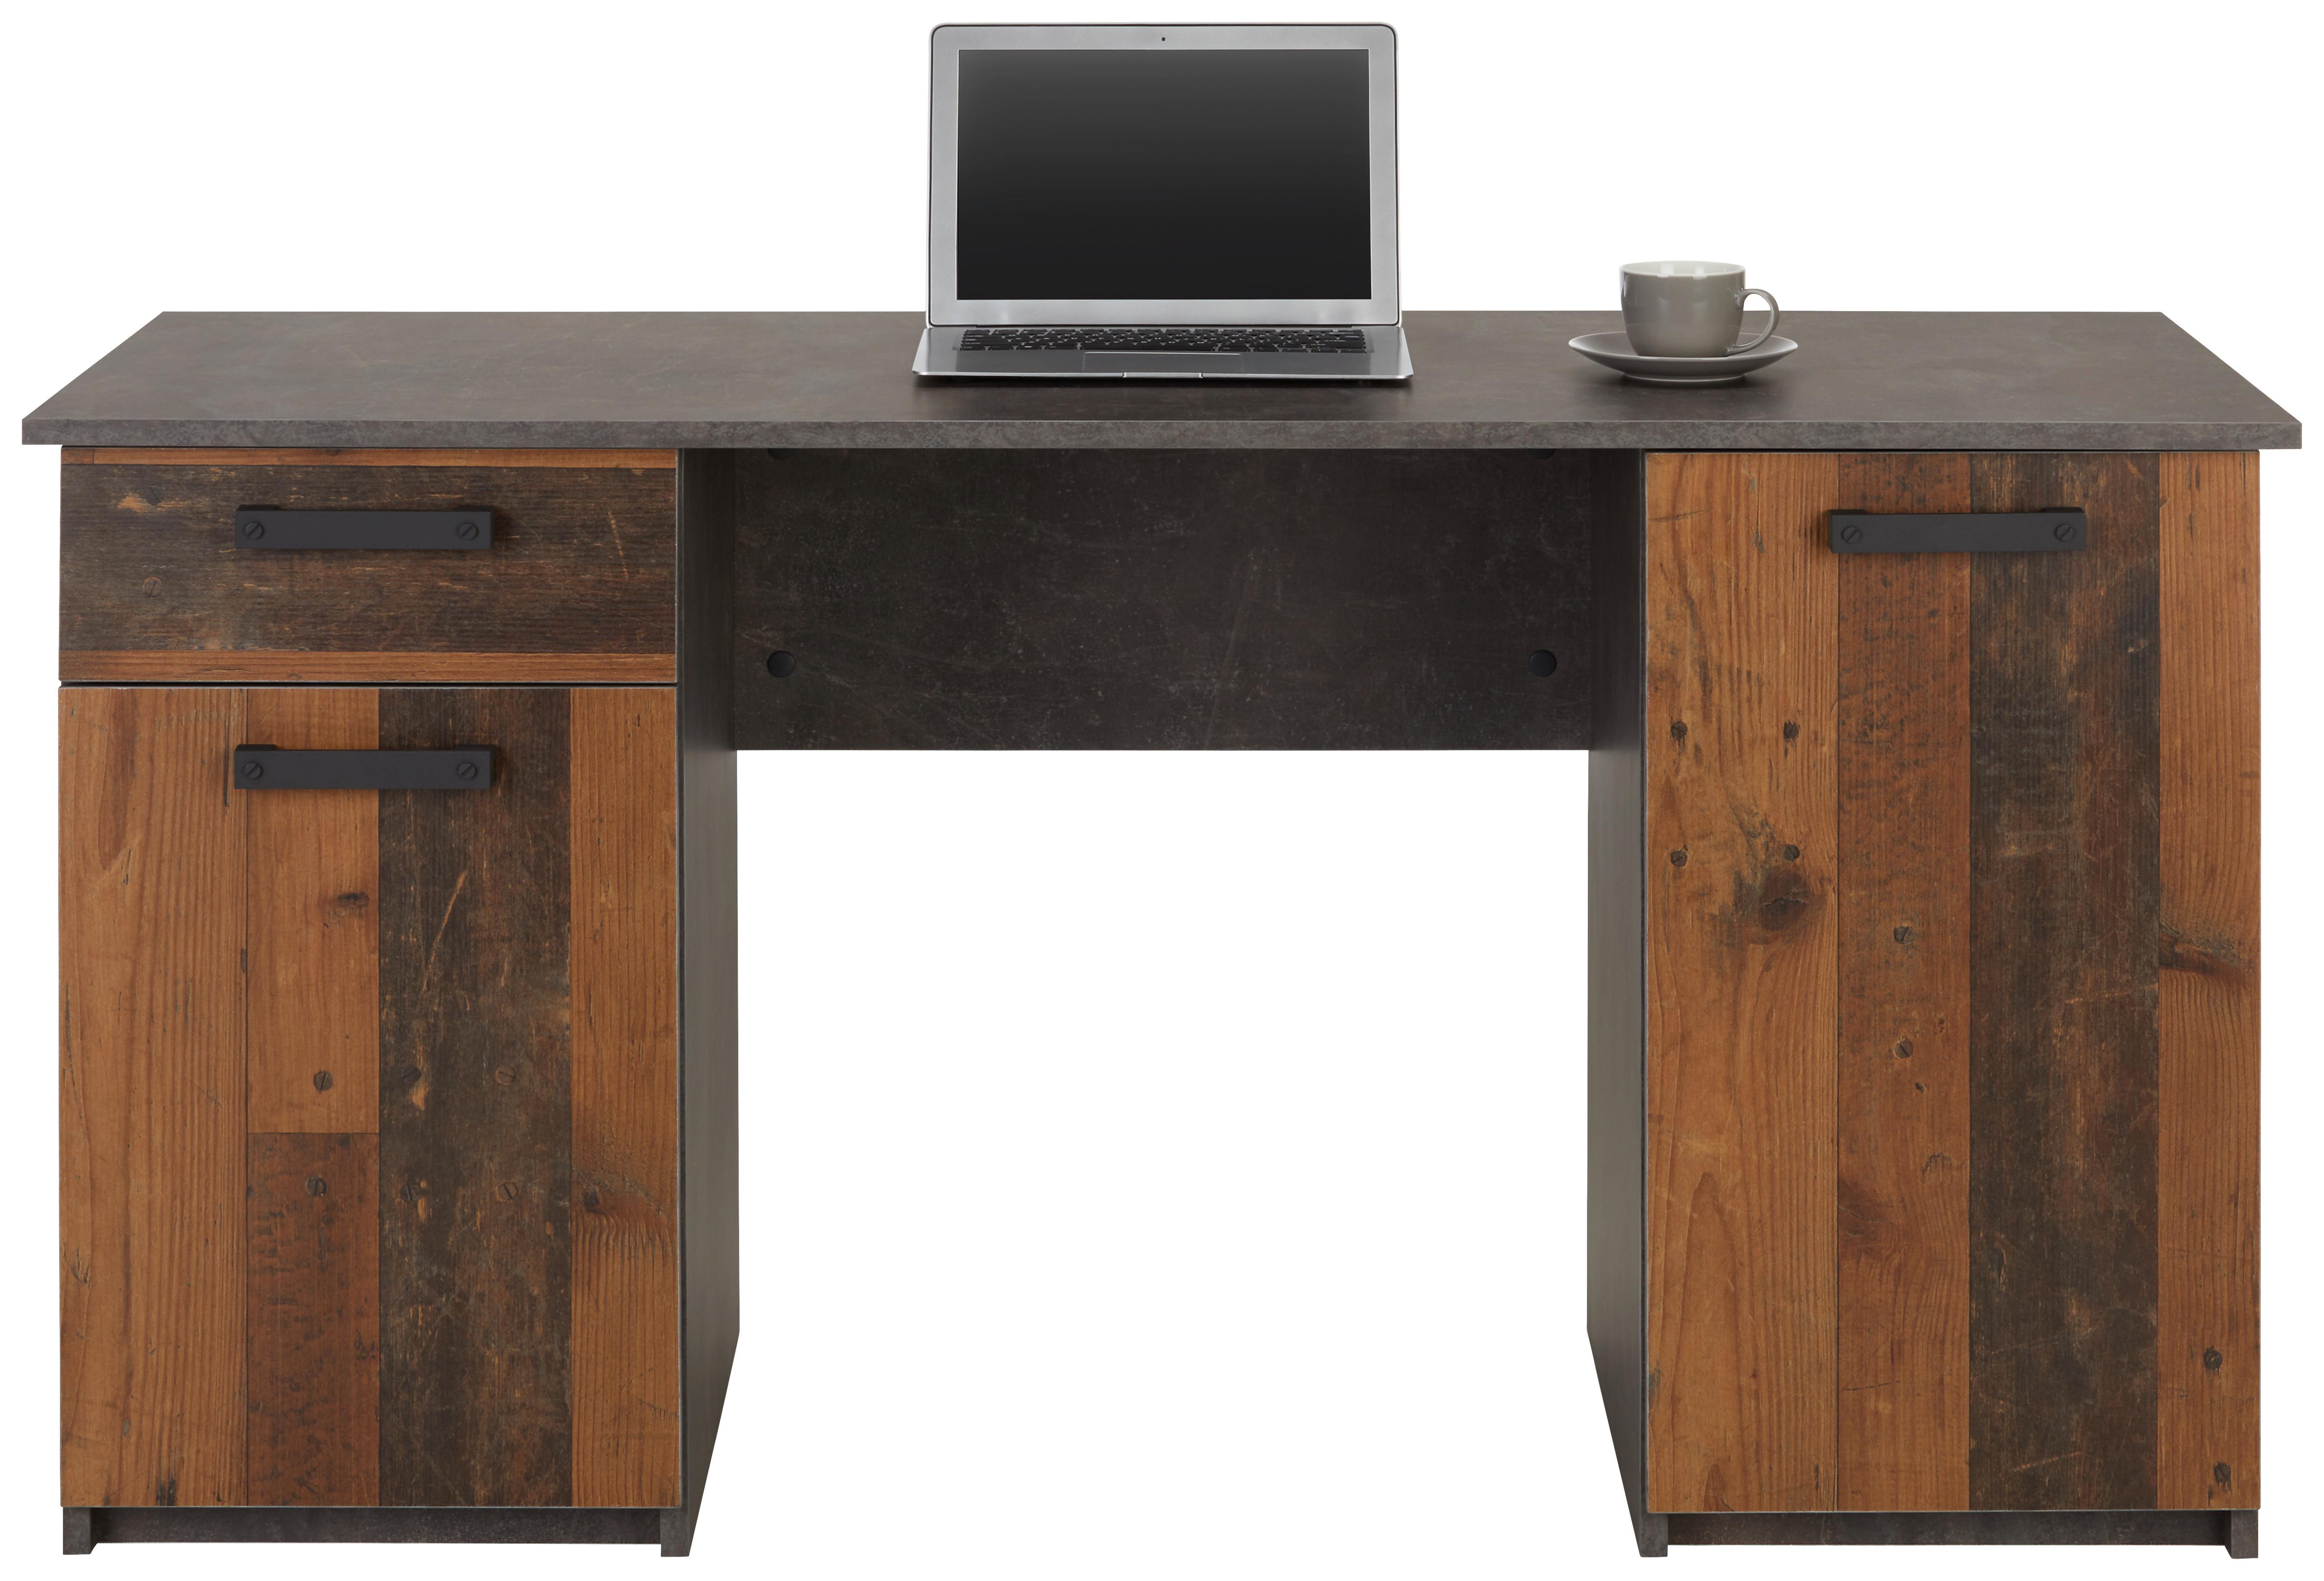 Schreibtisch in Braun/Dunkelgrau - Dunkelgrau/Dunkelbraun, MODERN, Holzwerkstoff/Kunststoff (145/76/60cm) - Modern Living